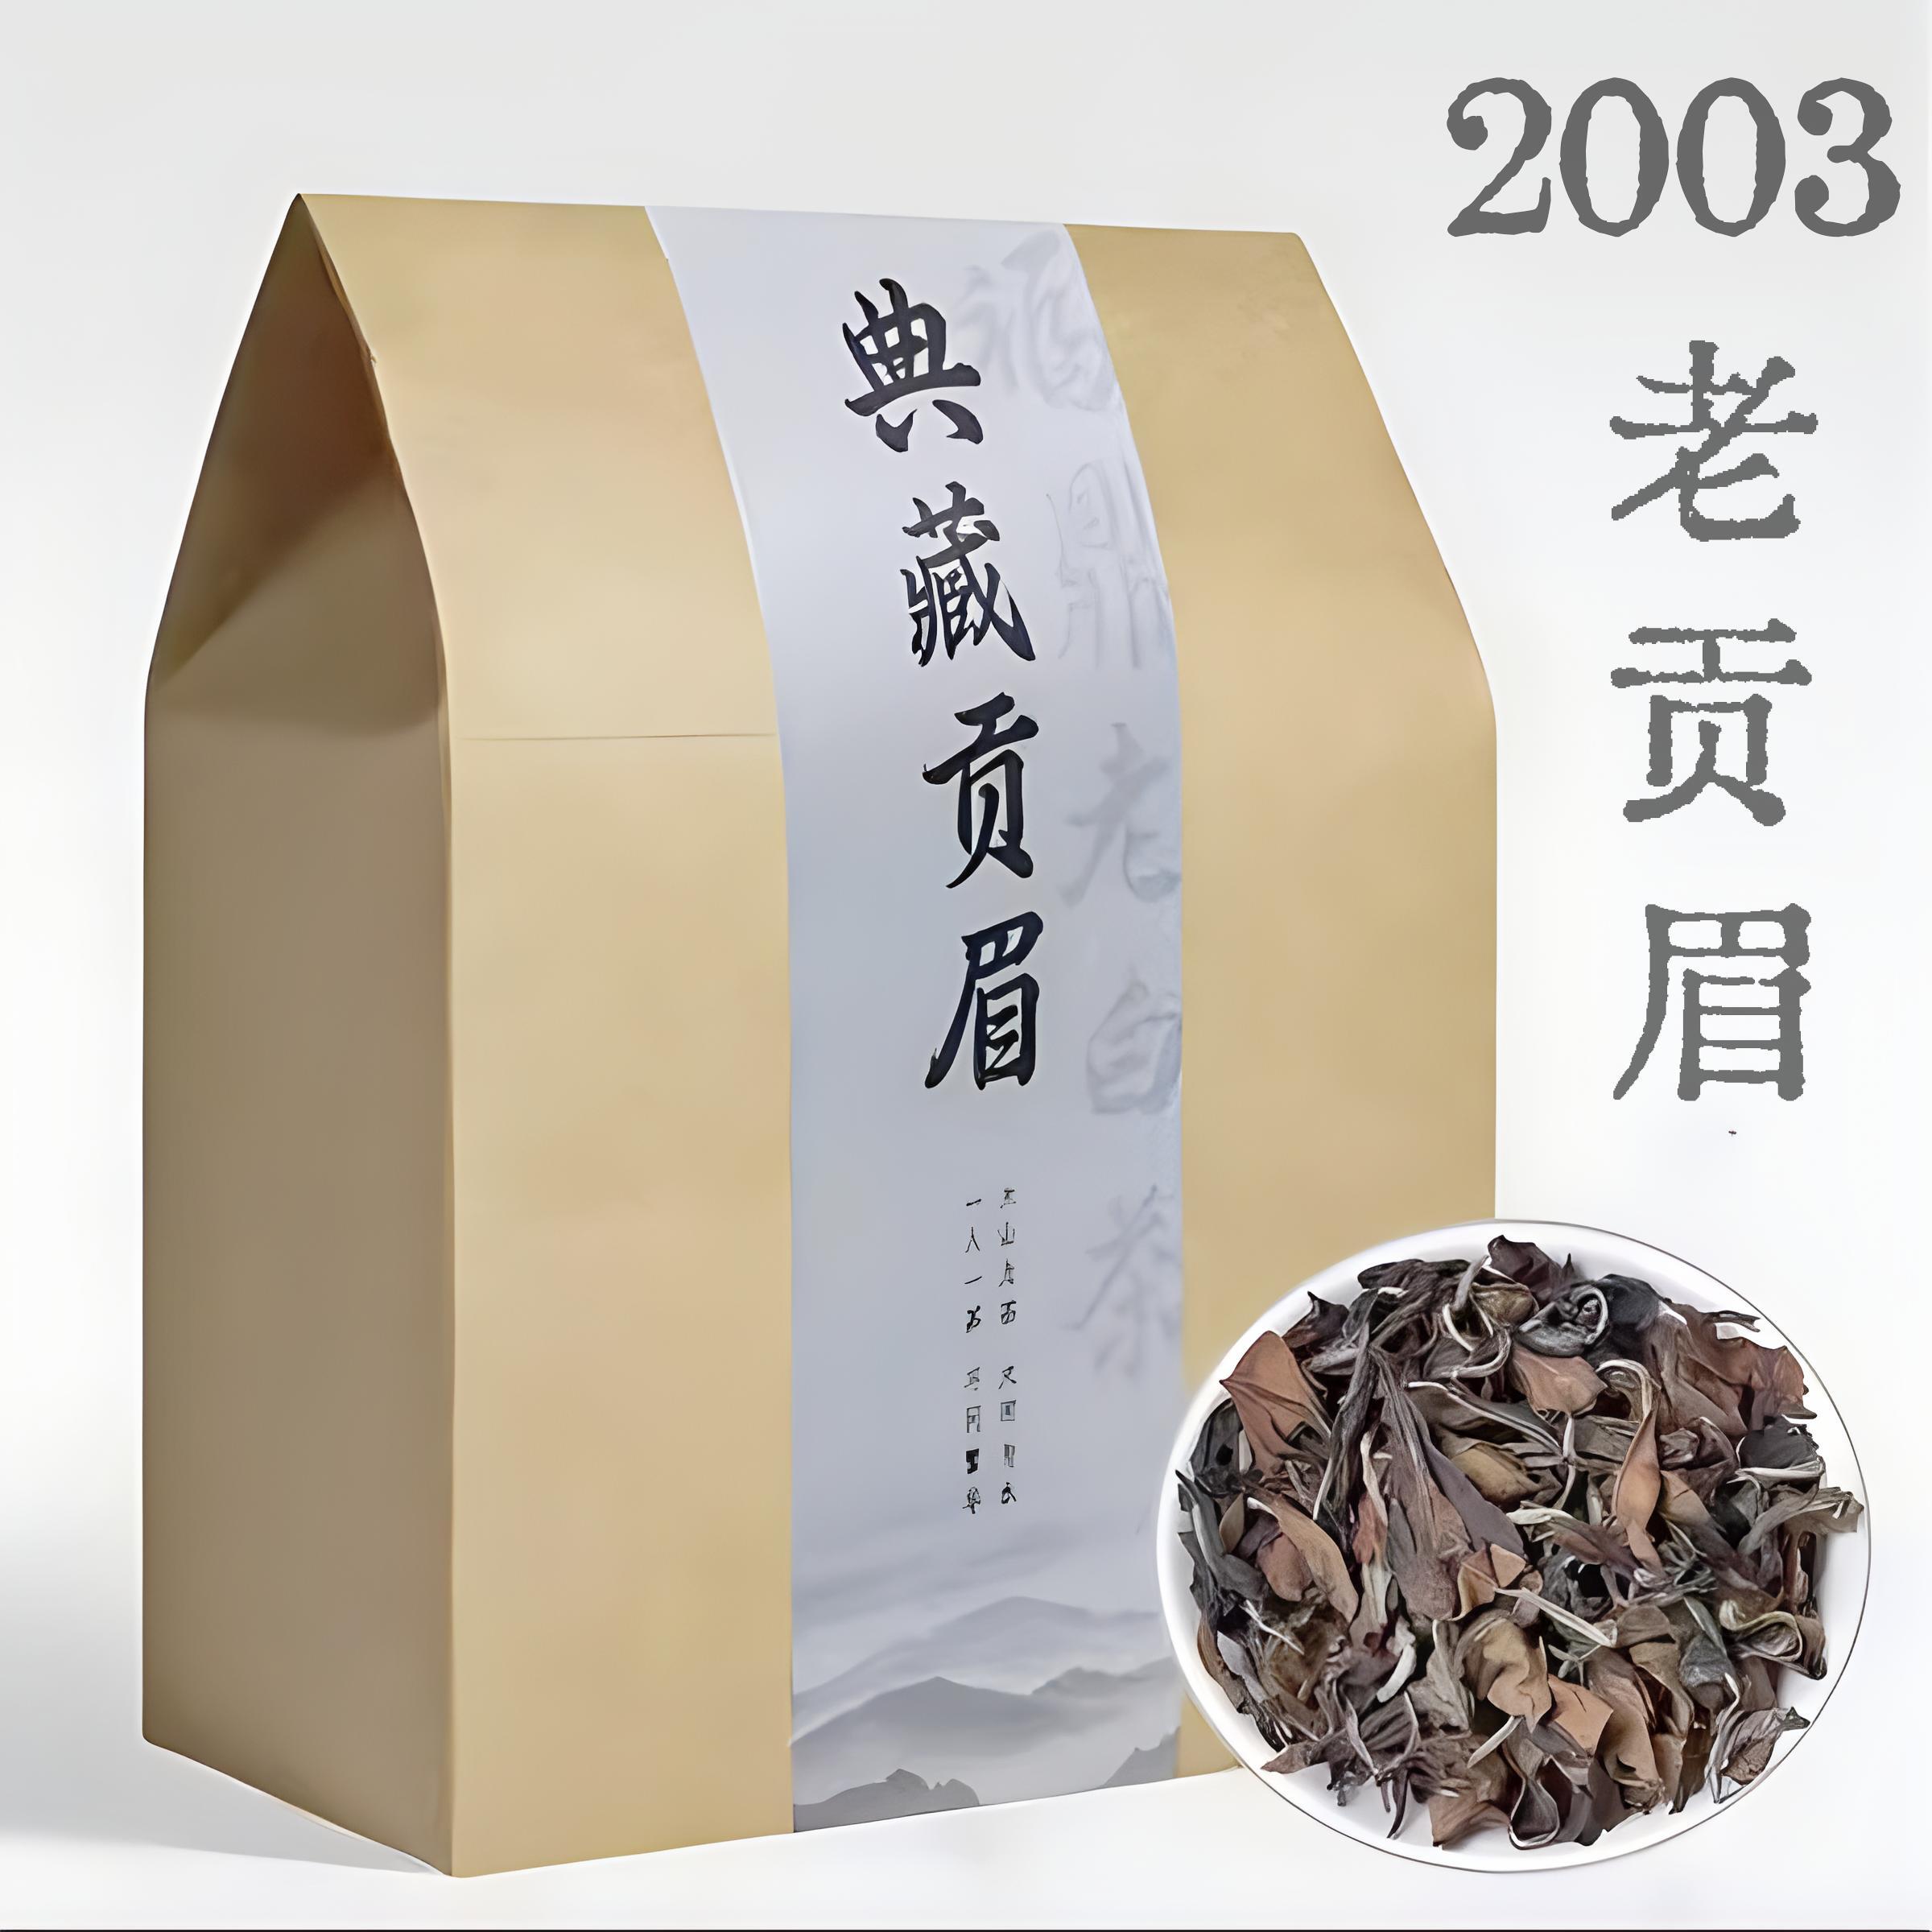 白茶福鼎白茶枣香老白茶老寿眉散茶2003年贡眉散装茶叶礼盒装500g